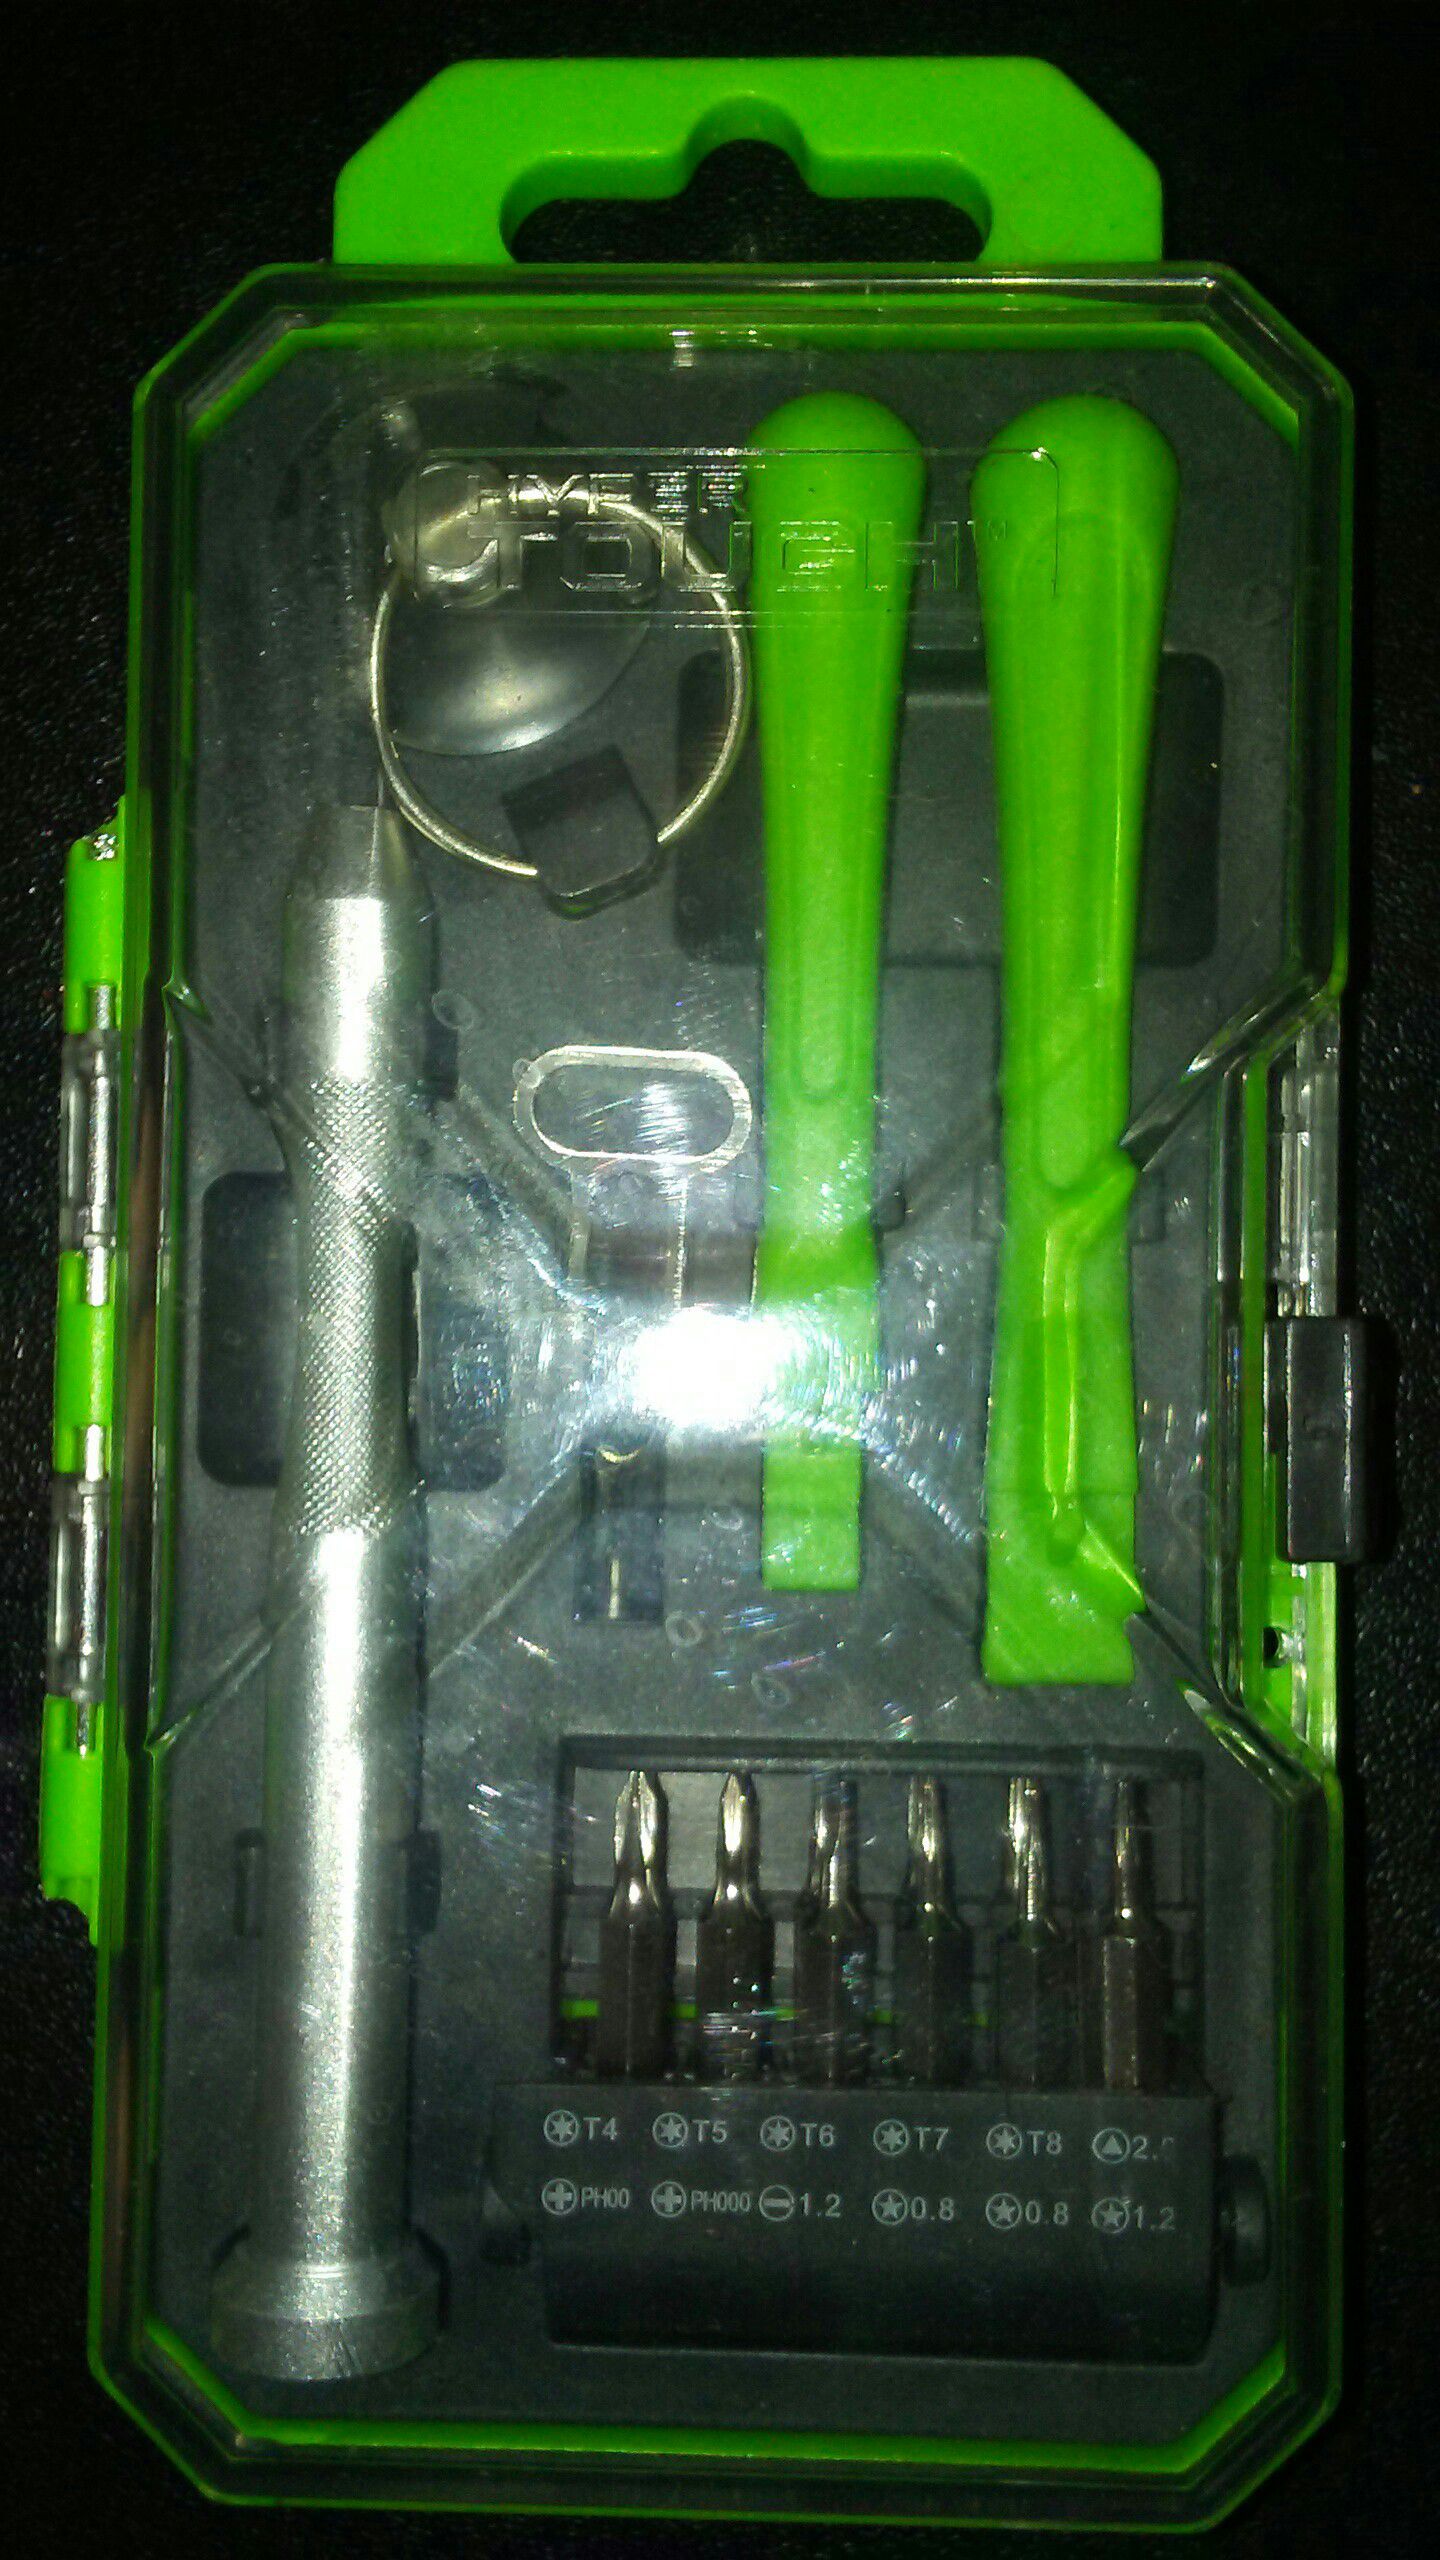 Electronics Repair Kit